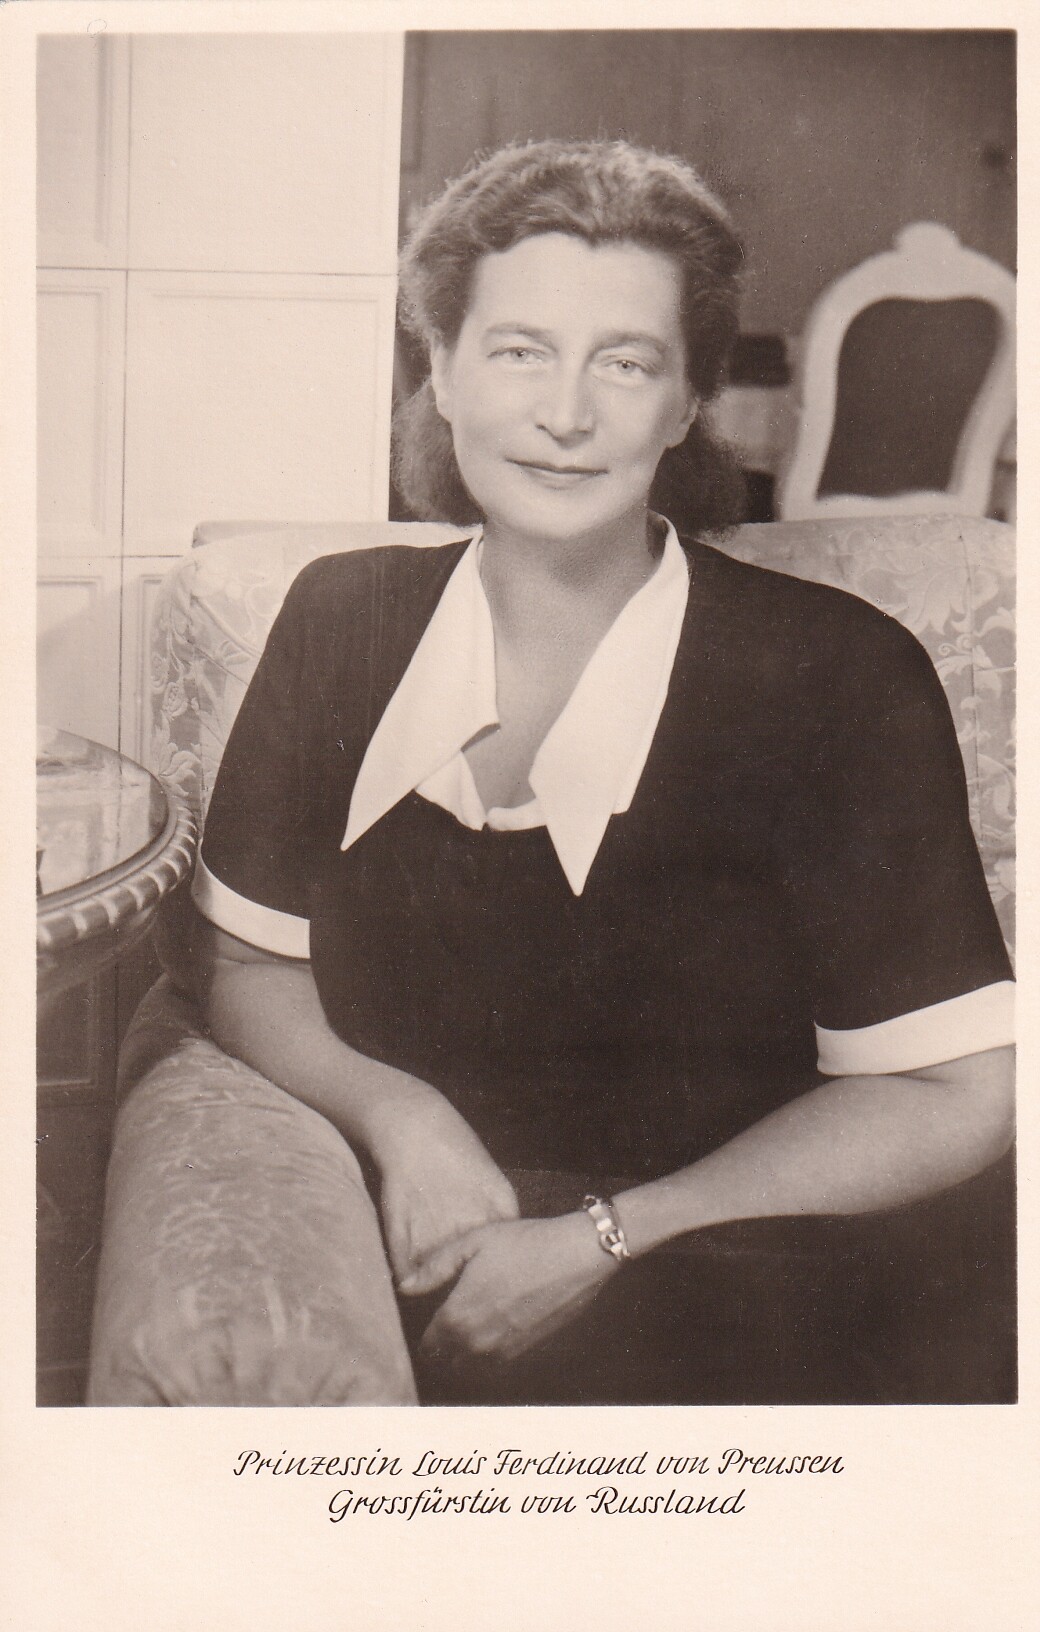 Bildpostkarte mit Foto von Kira Prinzessin von Preußen (1909-1967), um 1950 (Schloß Wernigerode GmbH RR-F)